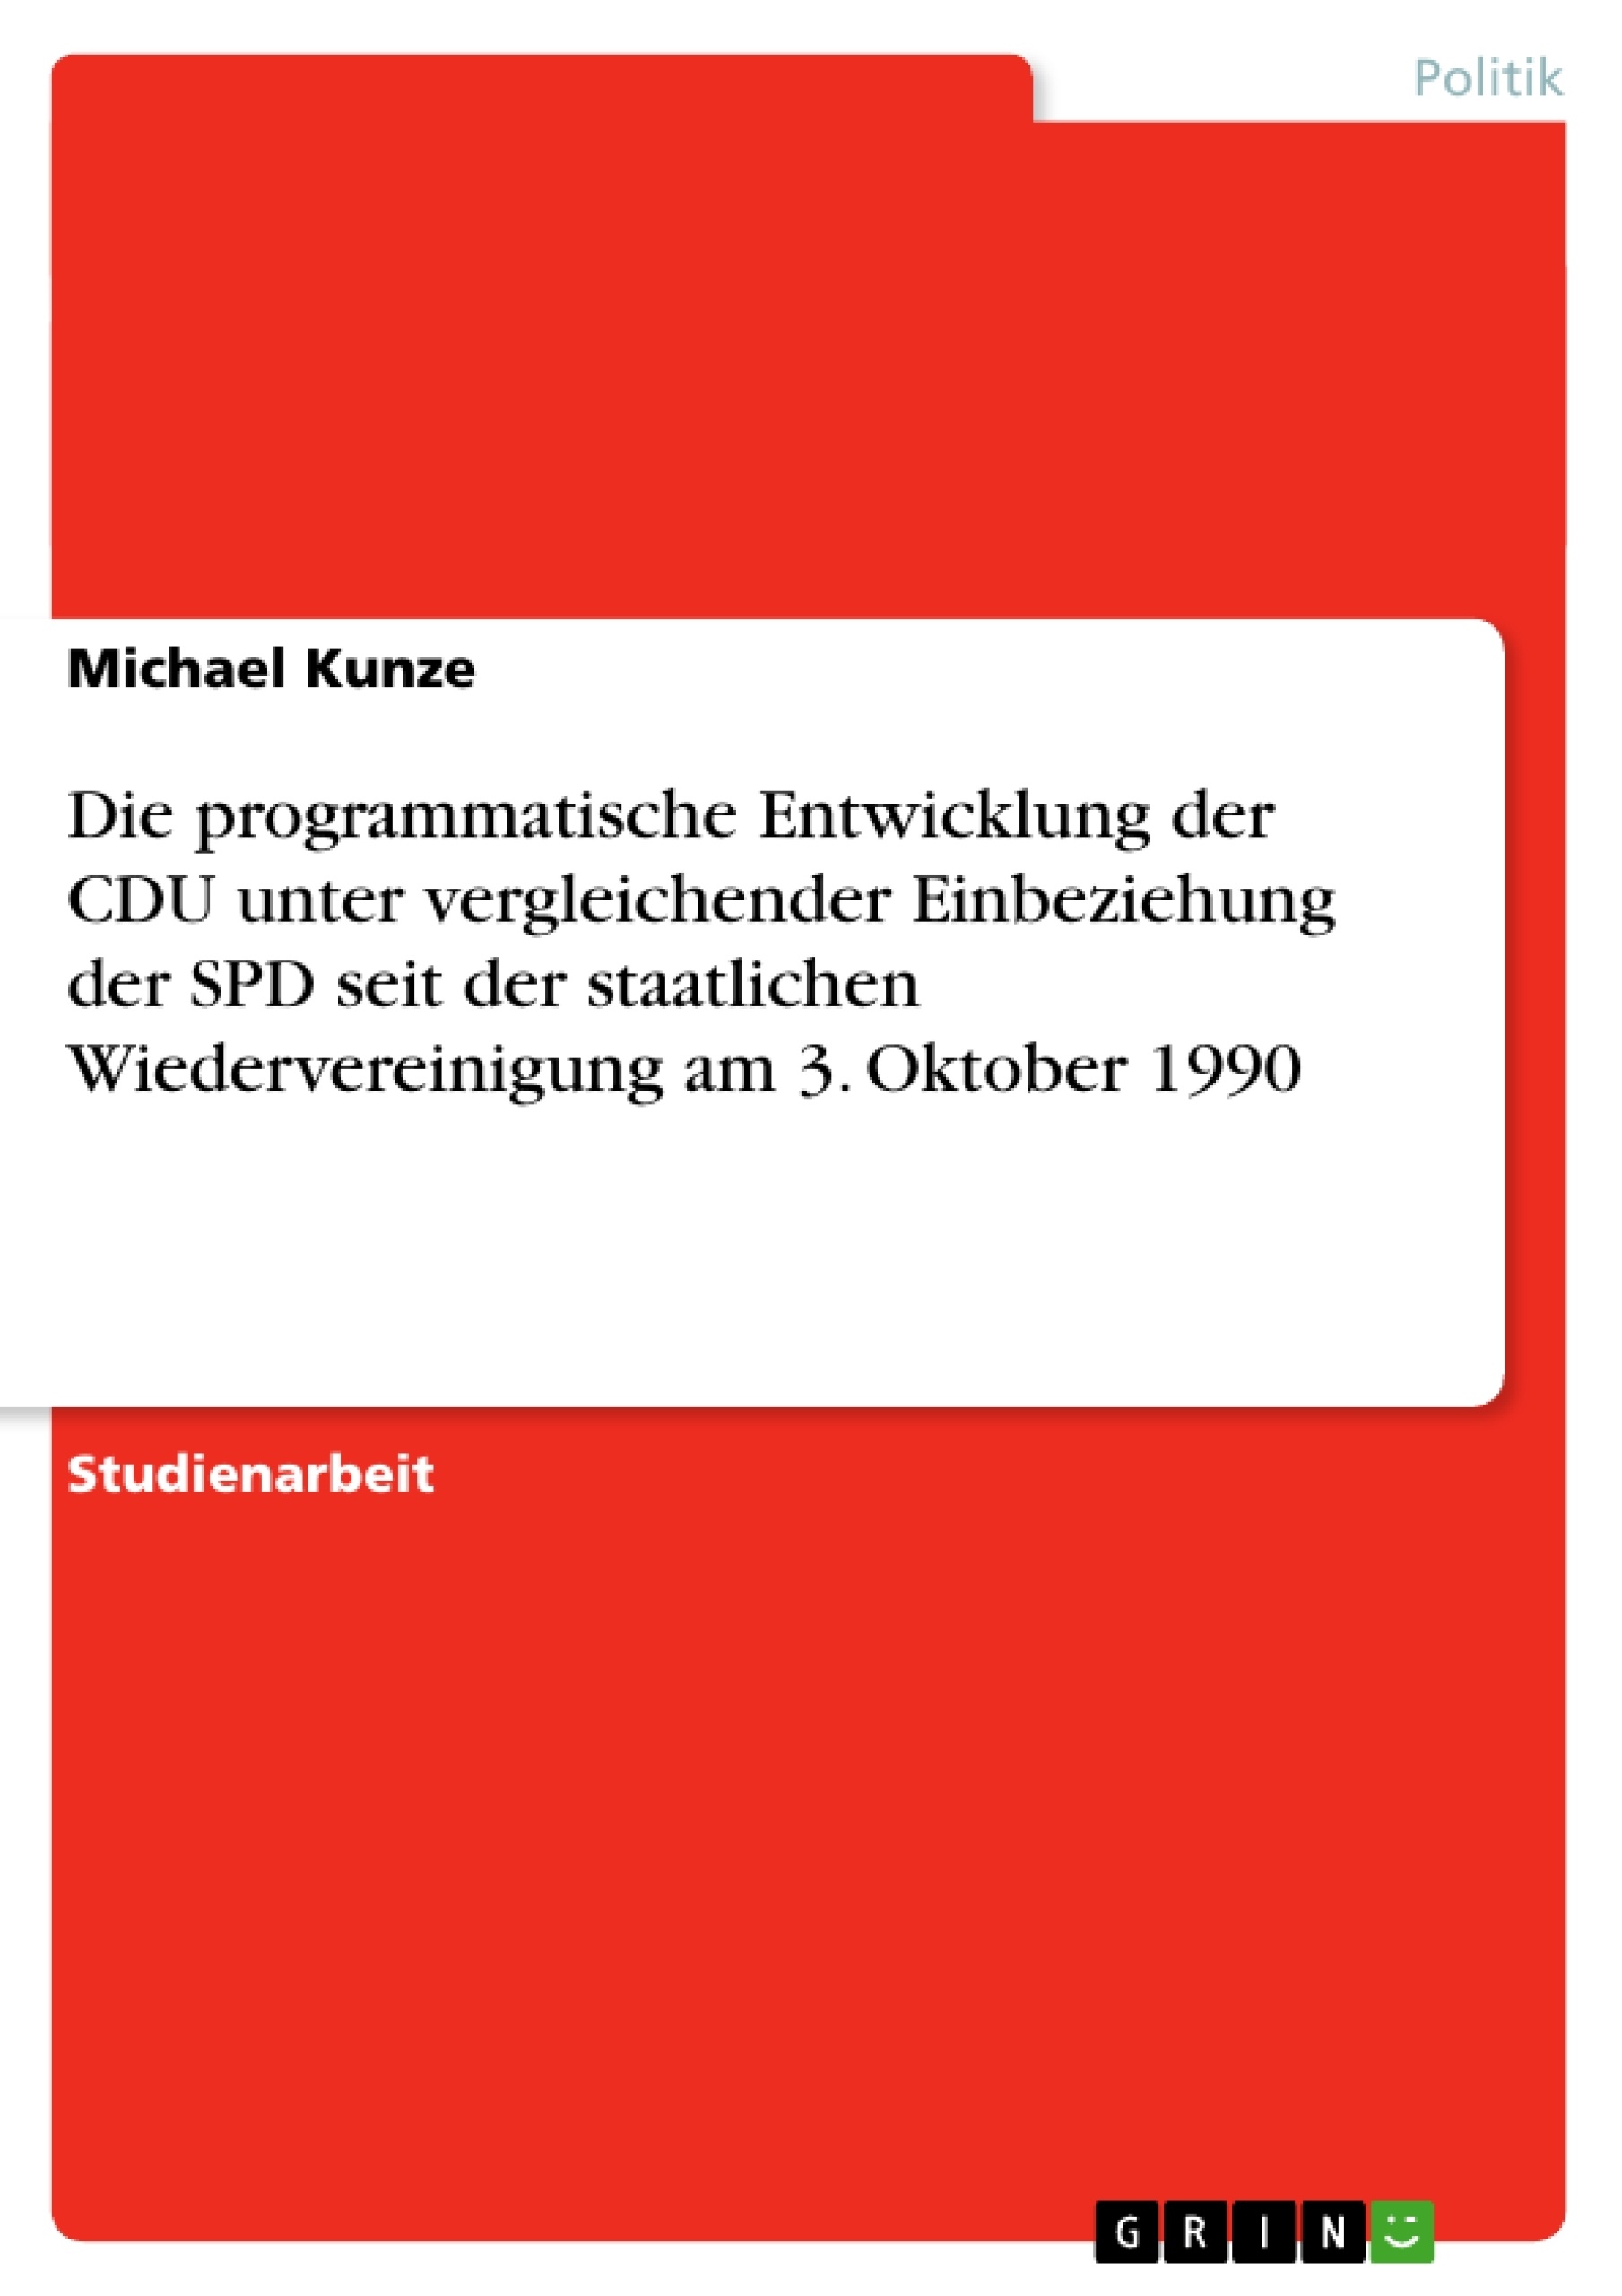 Título: Die programmatische Entwicklung der CDU unter vergleichender Einbeziehung der SPD seit der staatlichen Wiedervereinigung am 3. Oktober 1990